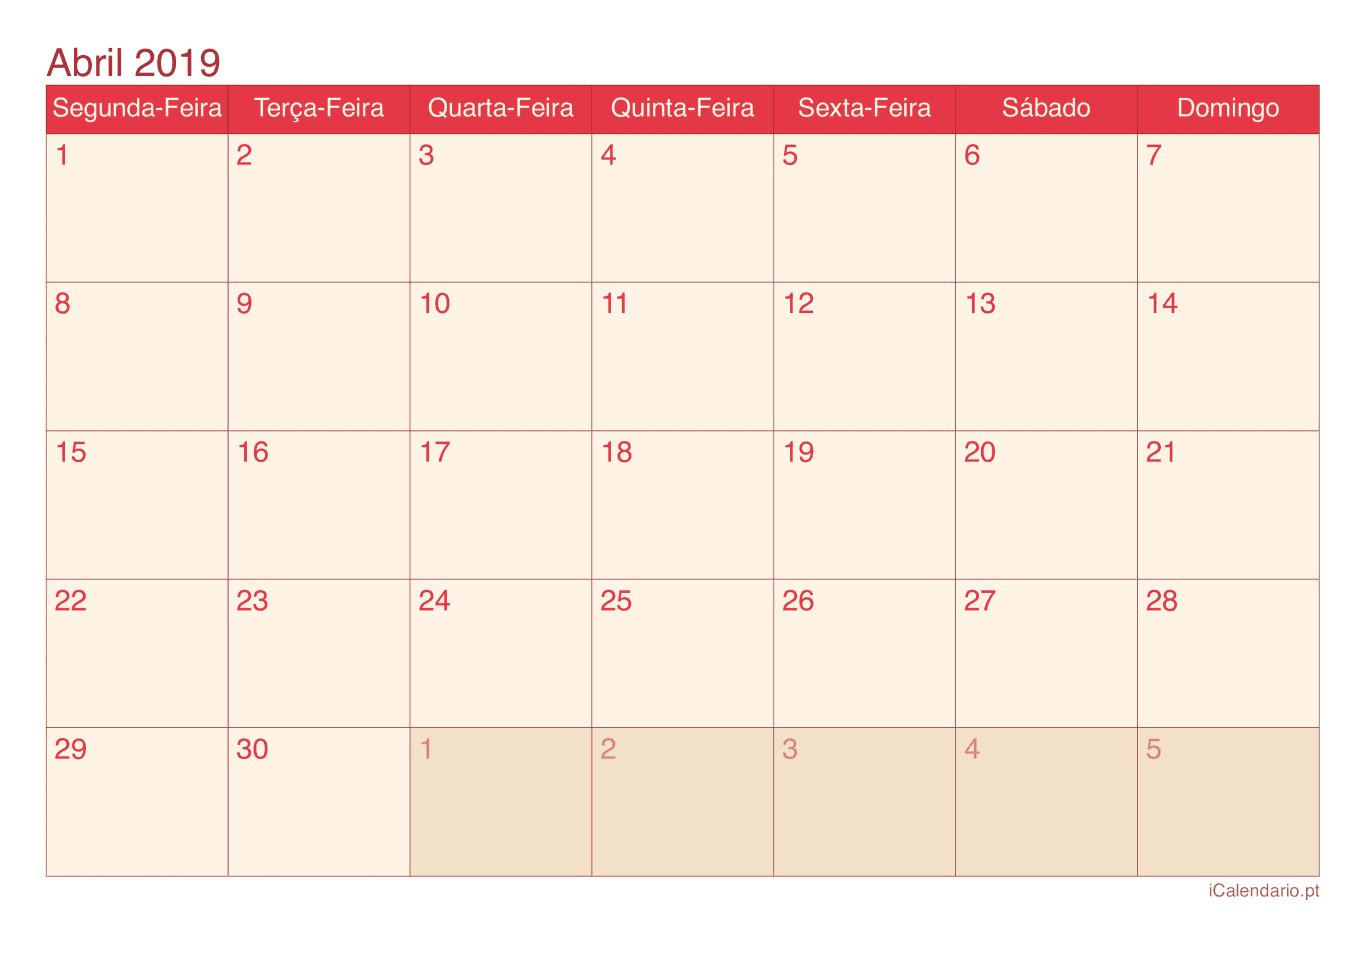 Calendário de abril 2019 - Cherry